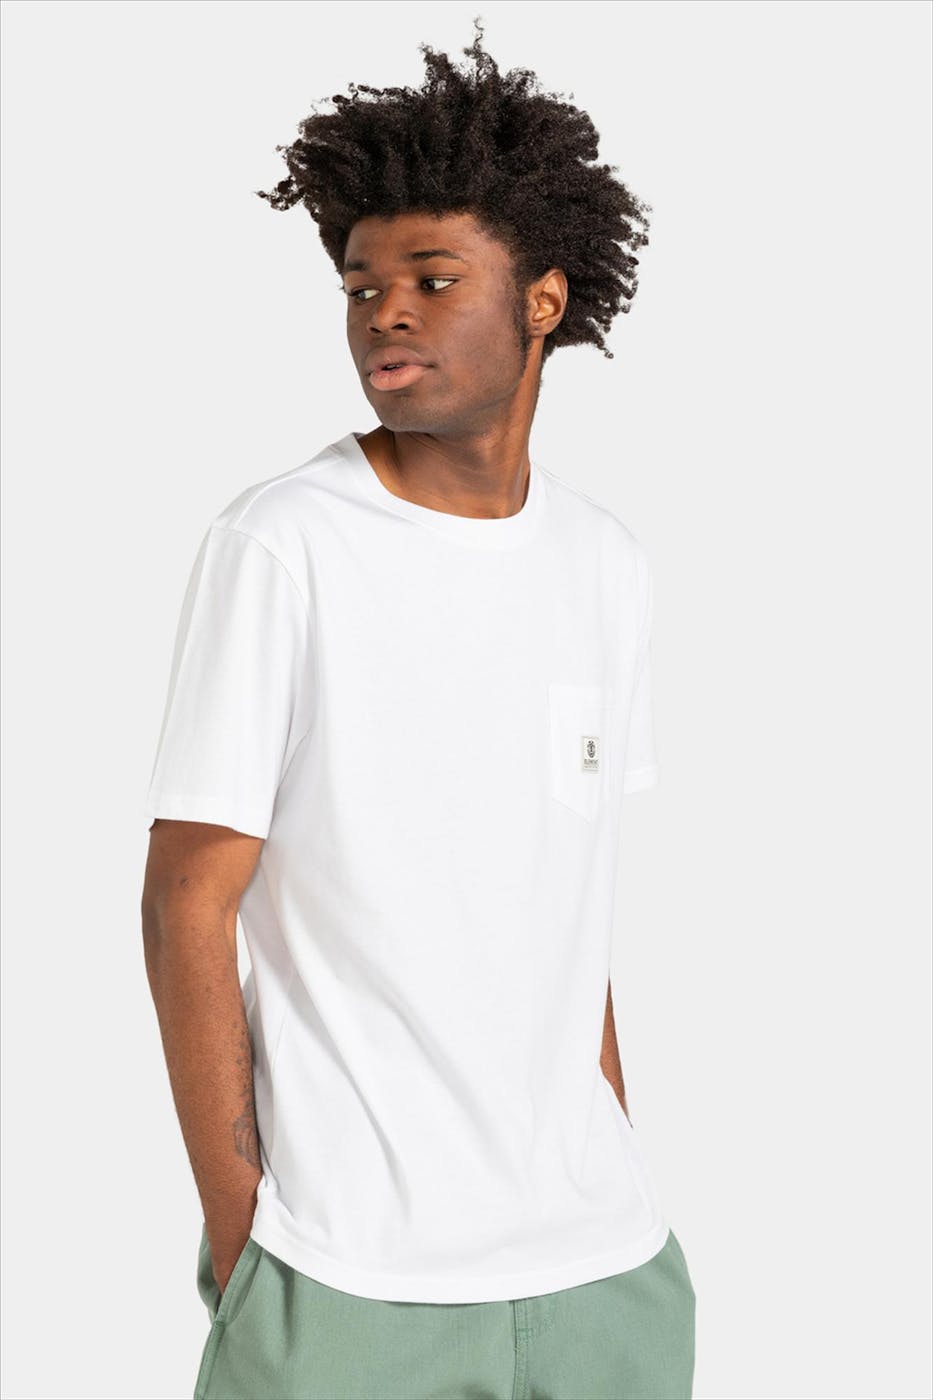 Element - Witte Basic Pocket Label T-shirt